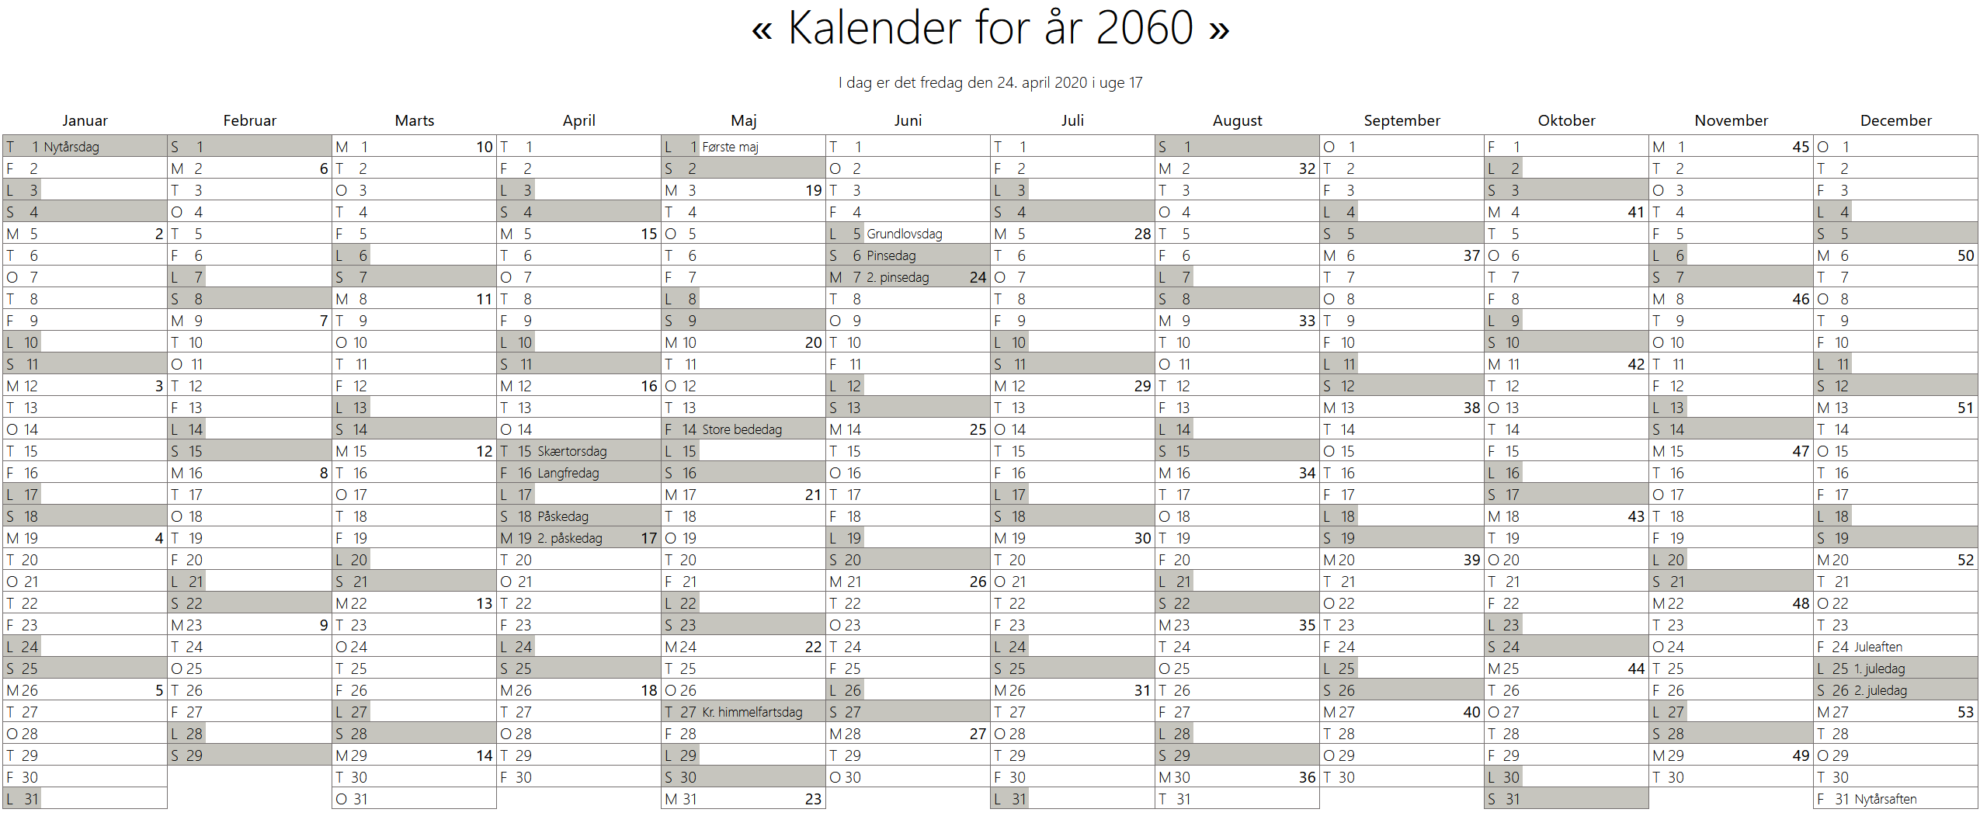 Kalender med ugenumre og helligdage – Morten Helmstedt